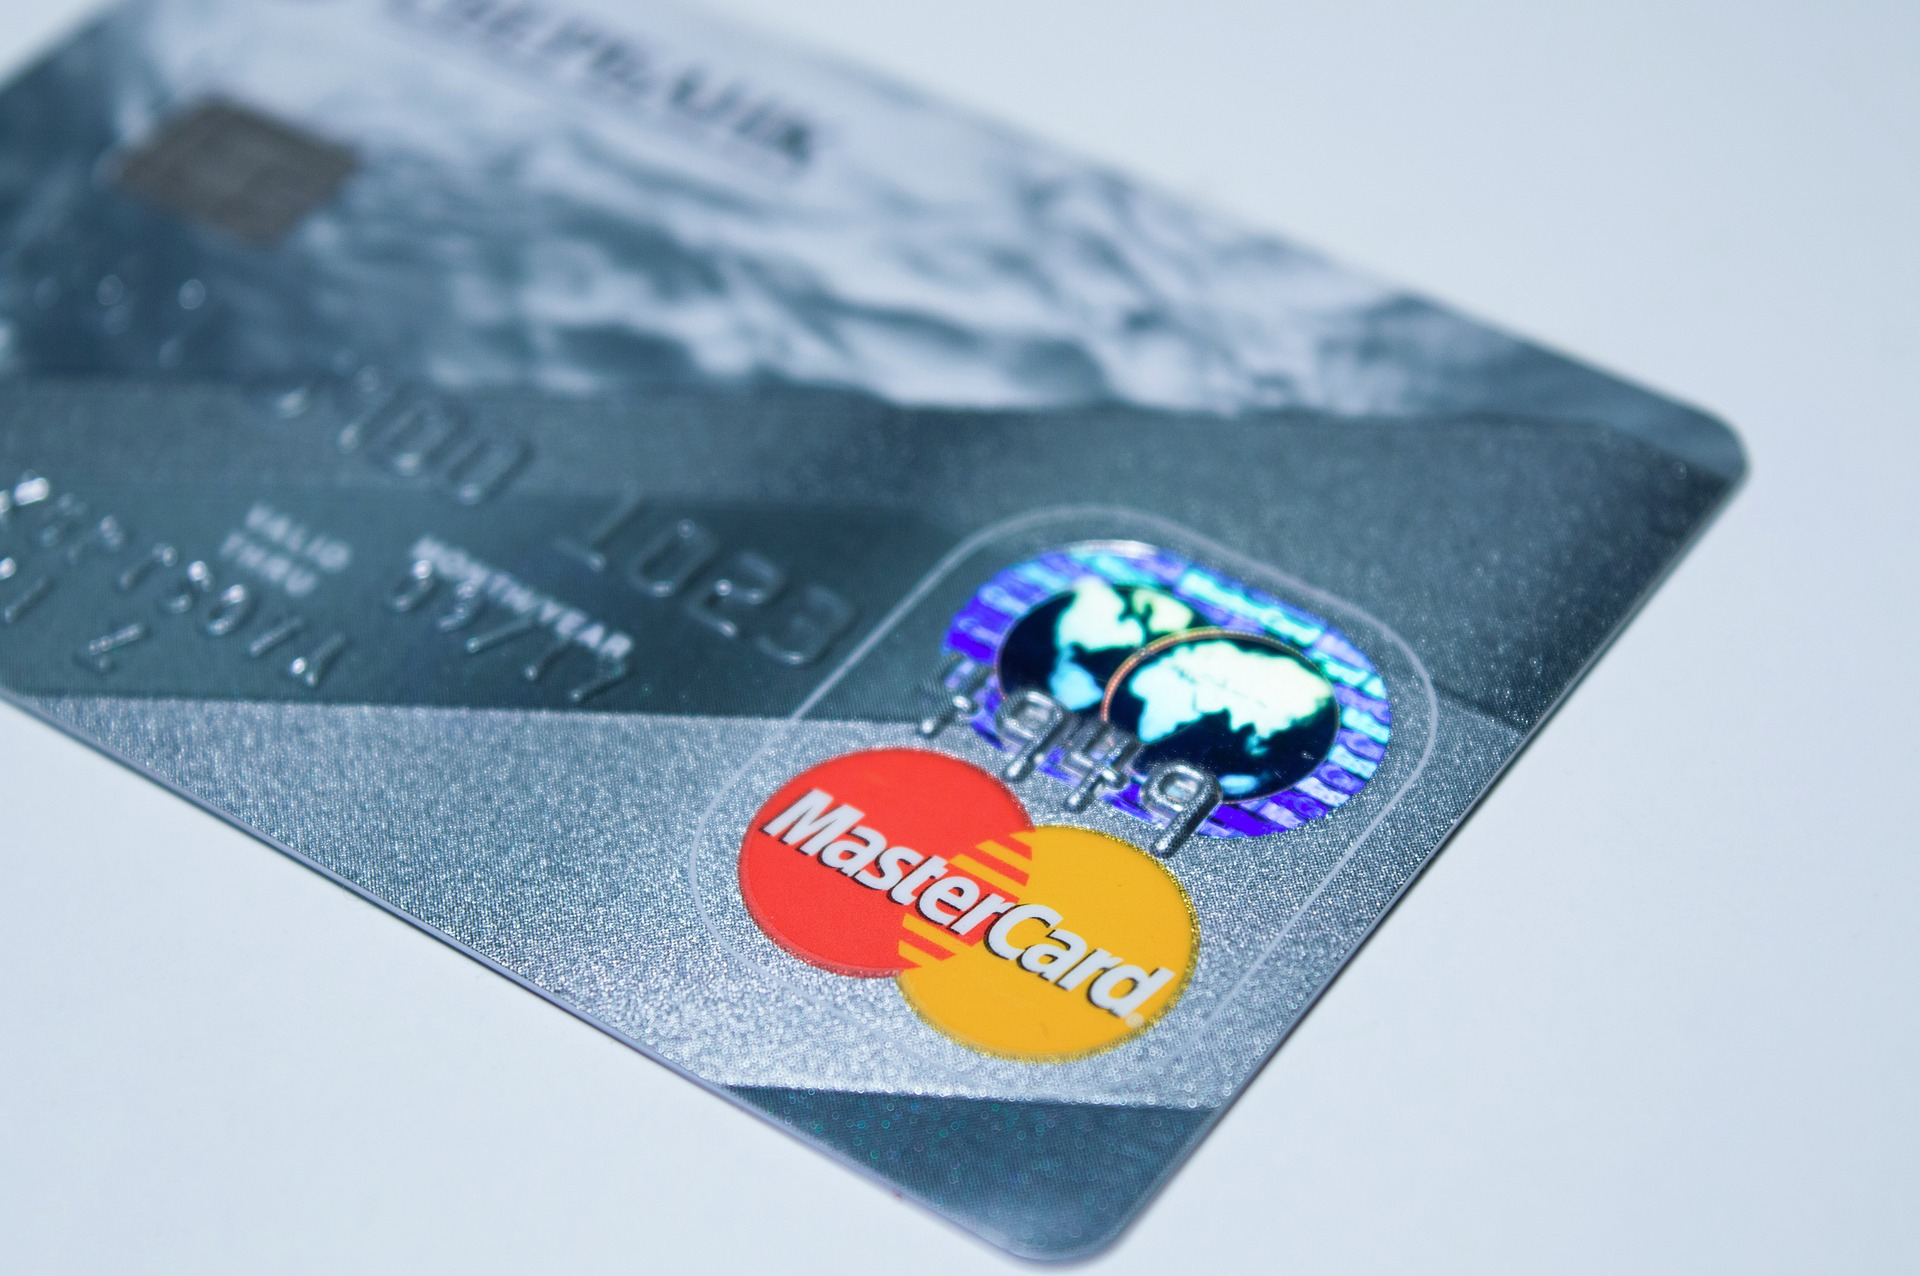 Mastercard si espande: in arrivo la consulenza dedicata alle criptovalute con 500 nuovi assunti